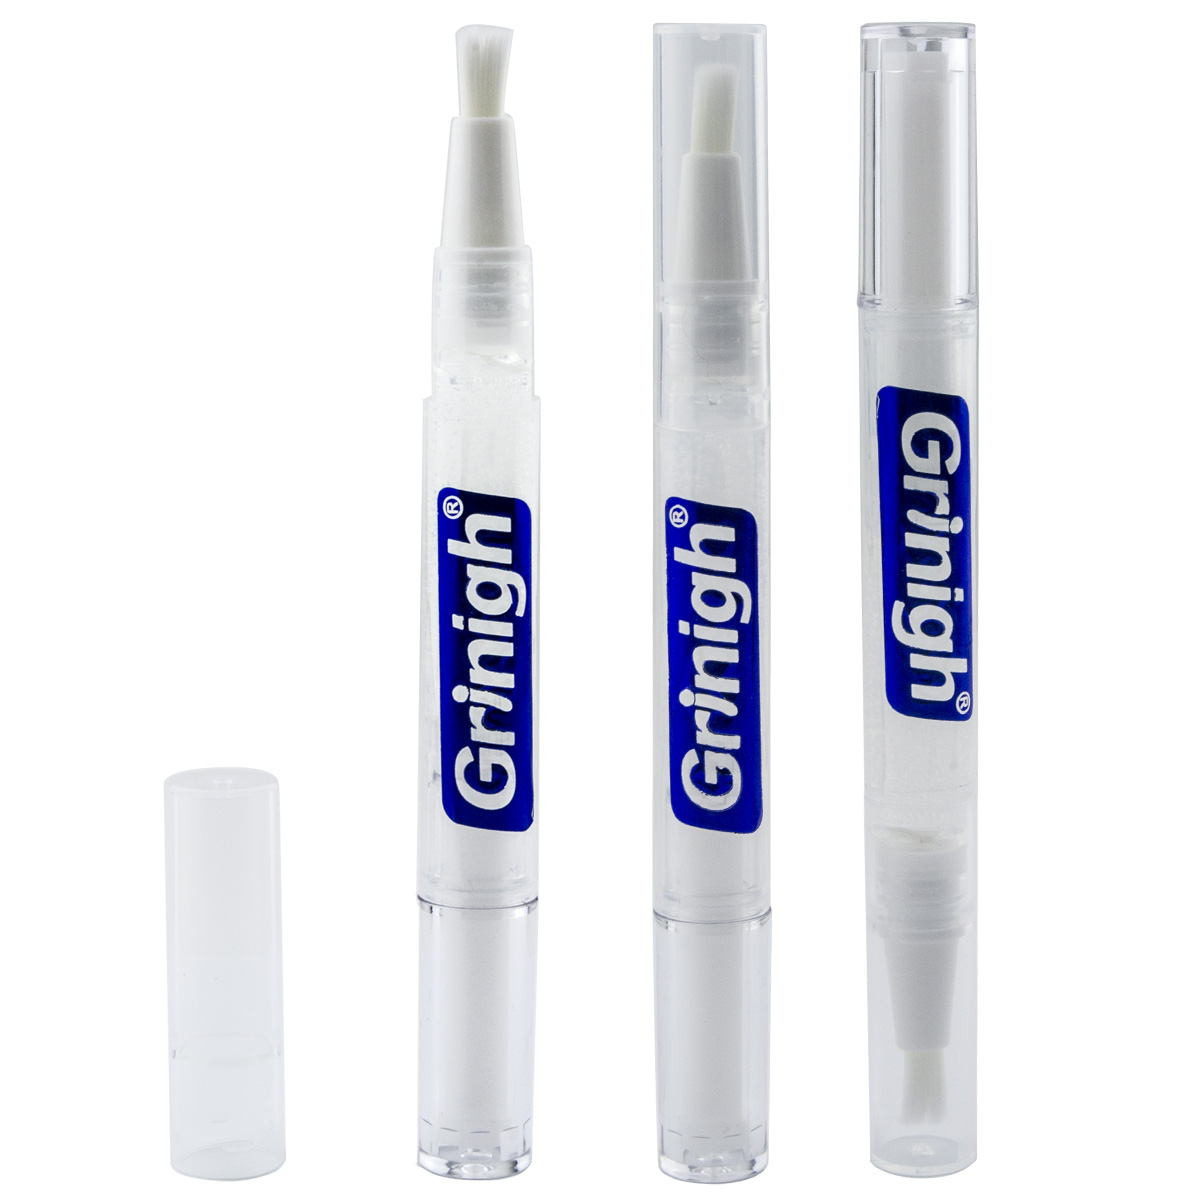 Caneta aplicadora de branqueamento de dentes branca precisa Grin365 com ingredientes naturais - 3 Contagem - Gel de Força Concentrada (6% Peróxido de hidrogênio)